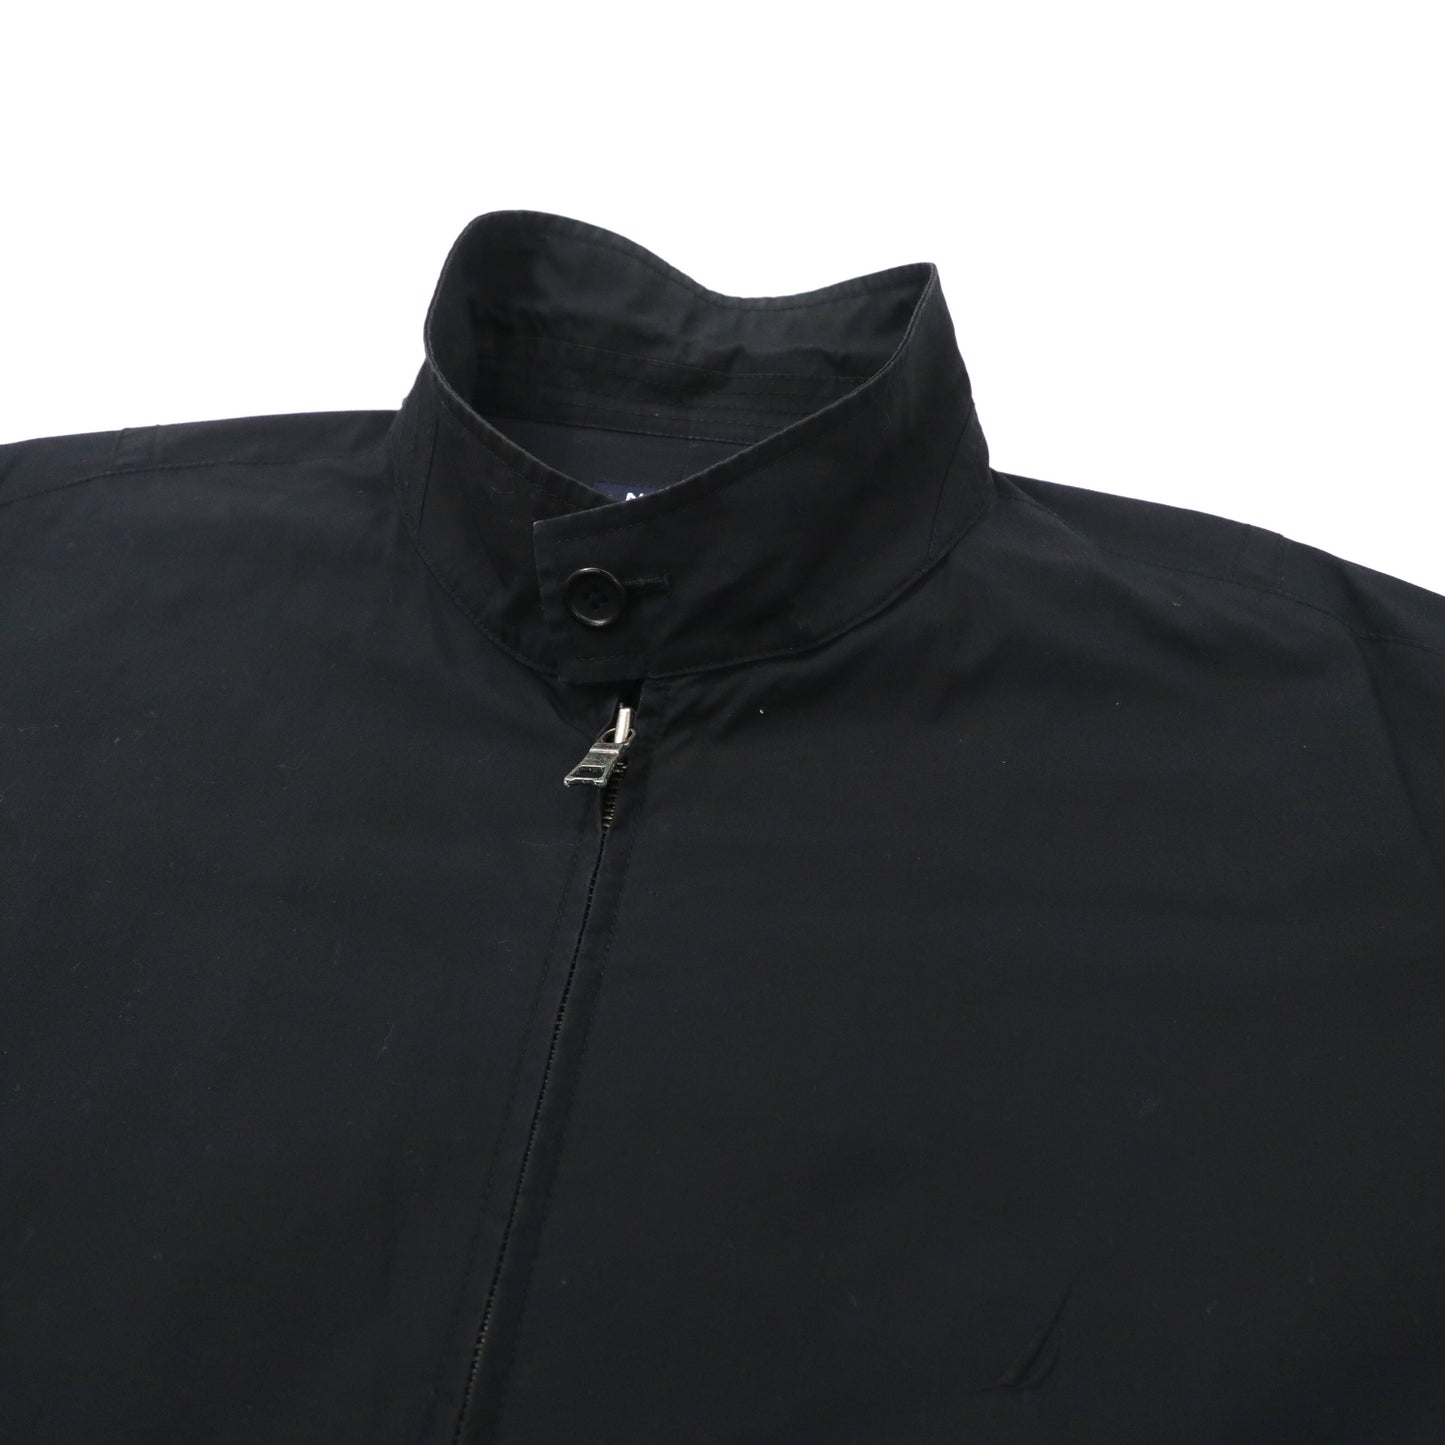 NAUTICA スウィングトップ ハリントンジャケット XL ブラック コットン ワンポイントロゴ刺繍 ビッグサイズ